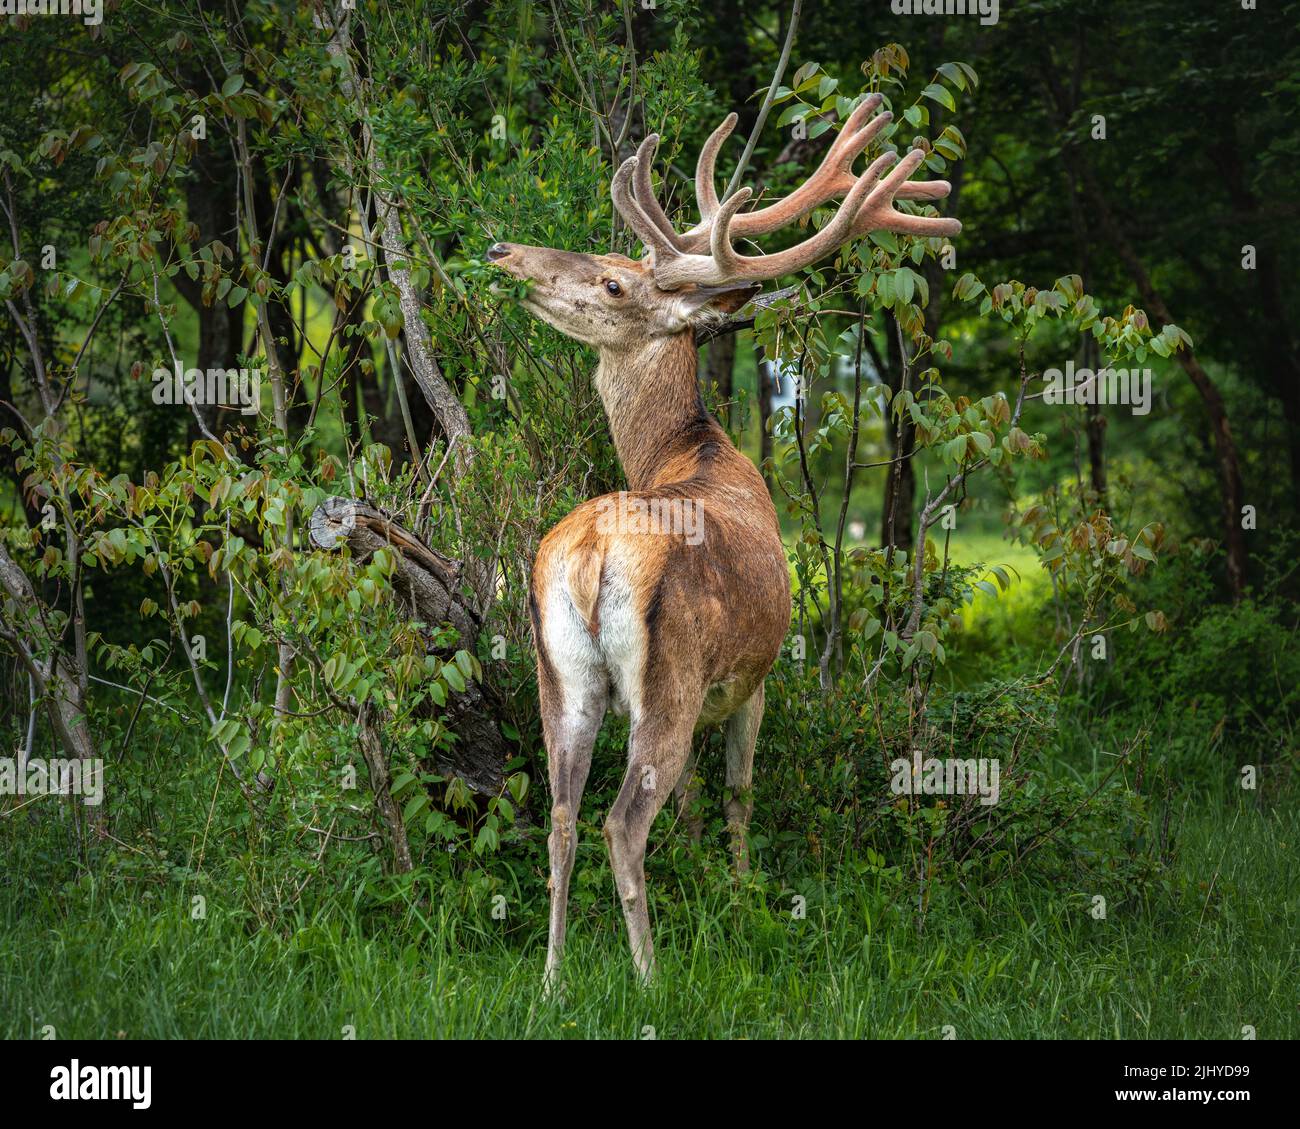 El ciervo adulto come los brotes tiernos de una planta. Parque Nacional de Abruzos Lazio y Molise, Abruzos, Italia, Europa Foto de stock